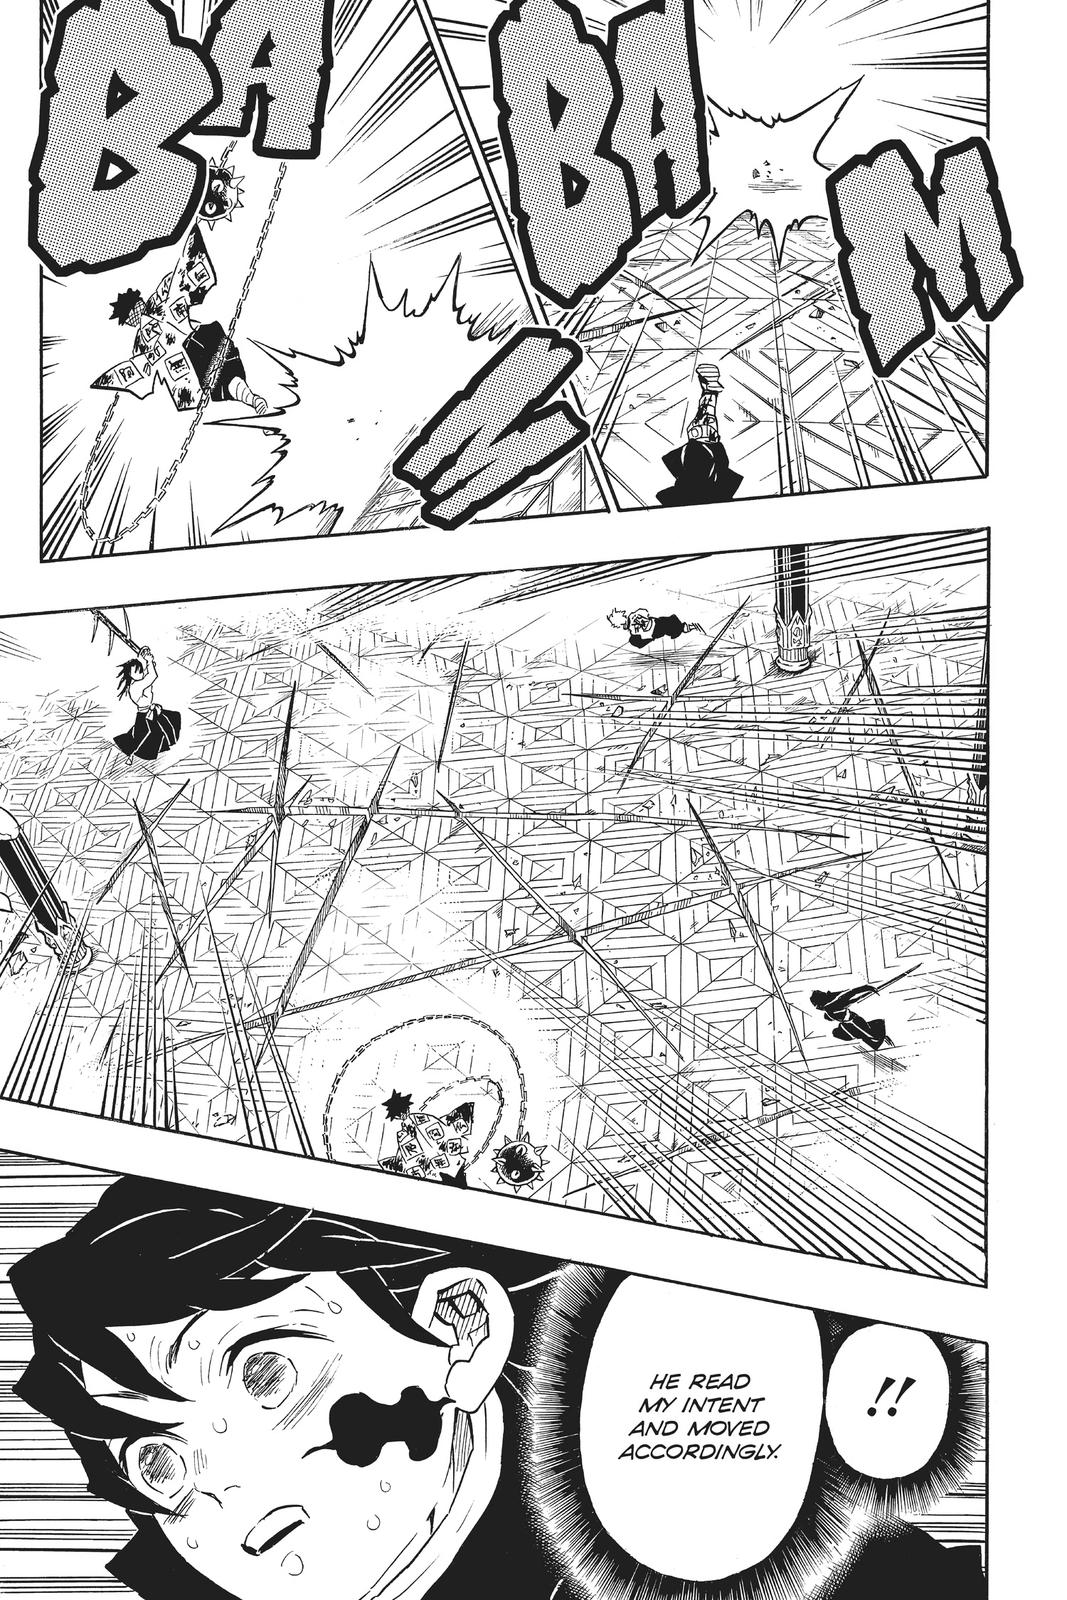 Demon Slayer Manga Manga Chapter - 173 - image 4